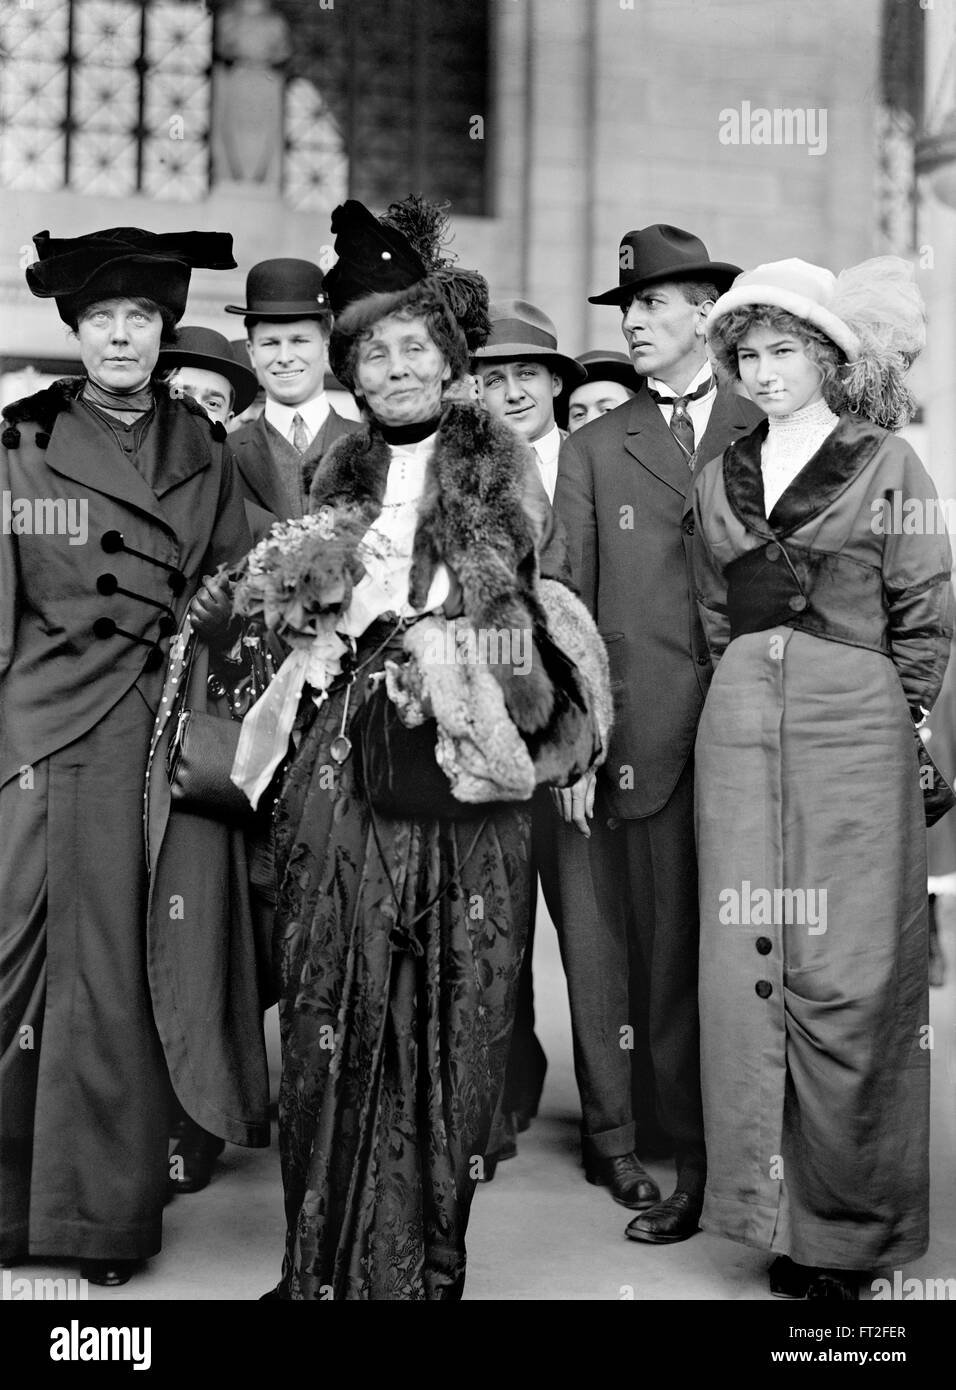 Onorevole Emmeline Pankhurst (centro), leader della British movimento delle Suffragette, con l'American attivista per i diritti delle donne, Lucy Burns, alla sua destra. Foto c.1913 Foto Stock